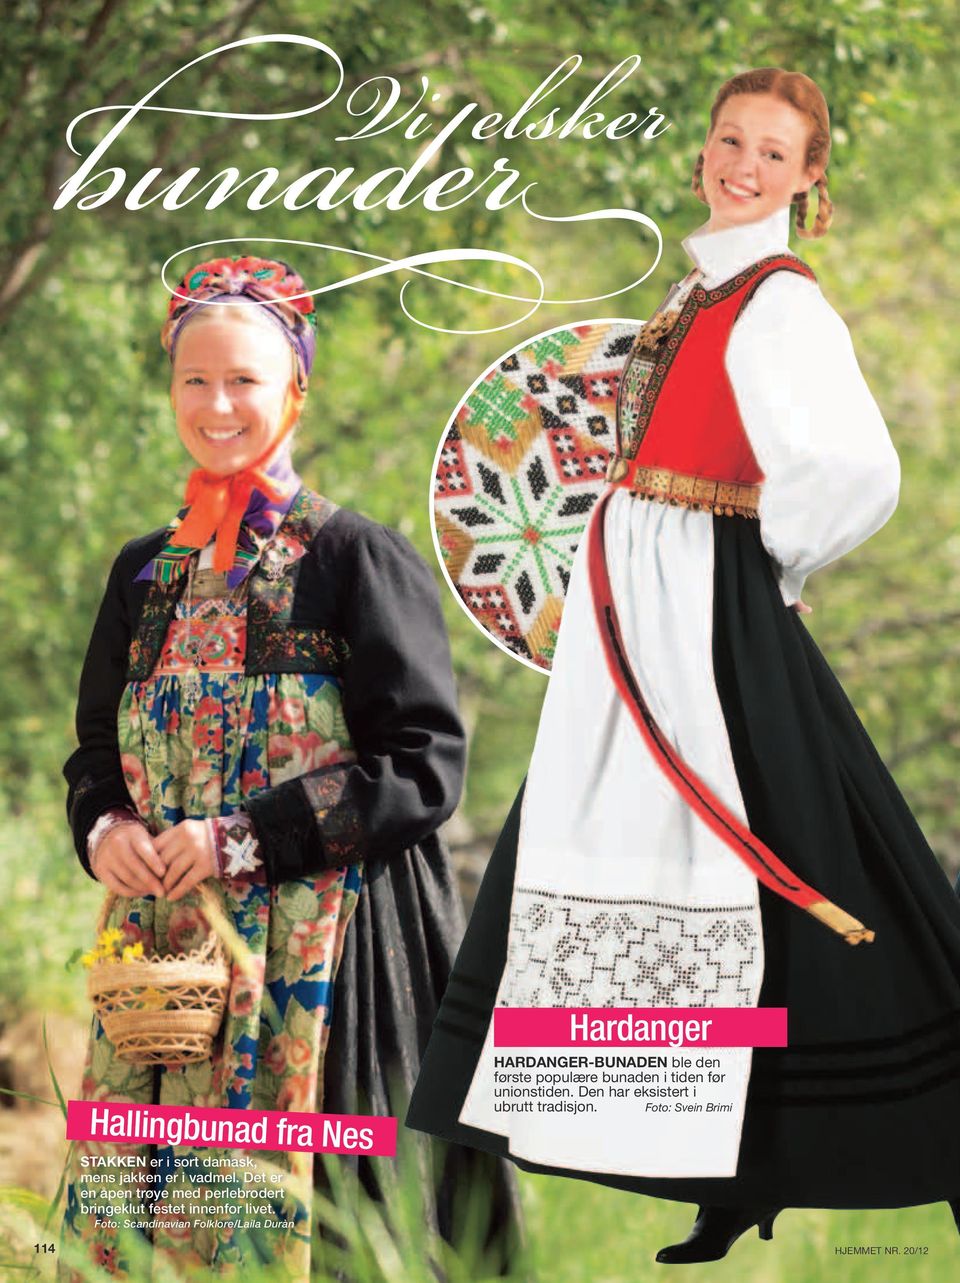 Foto: Scandinavian Folklore/Laila Duràn Hardanger HARDANGER-BUNADEN ble den første populære